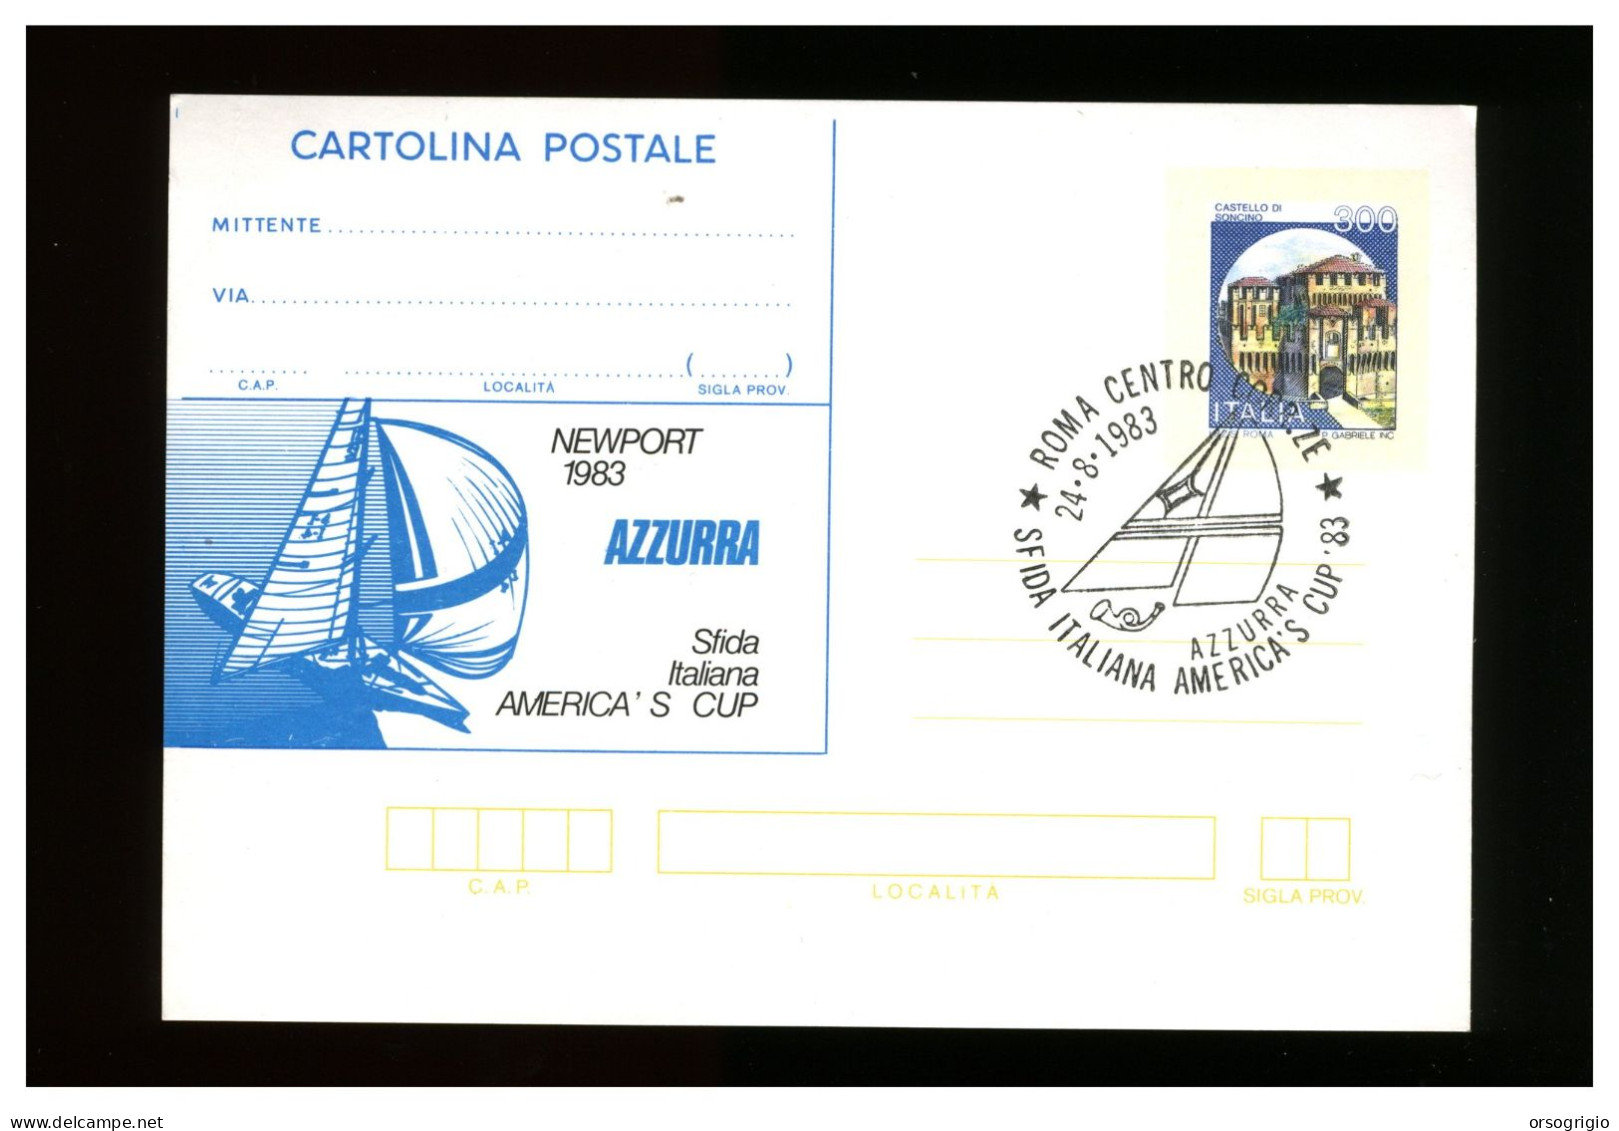 ITALIA - 1983 - AZZURRA - SFIDA ITALIANA AMERICA'S CUP - Segeln